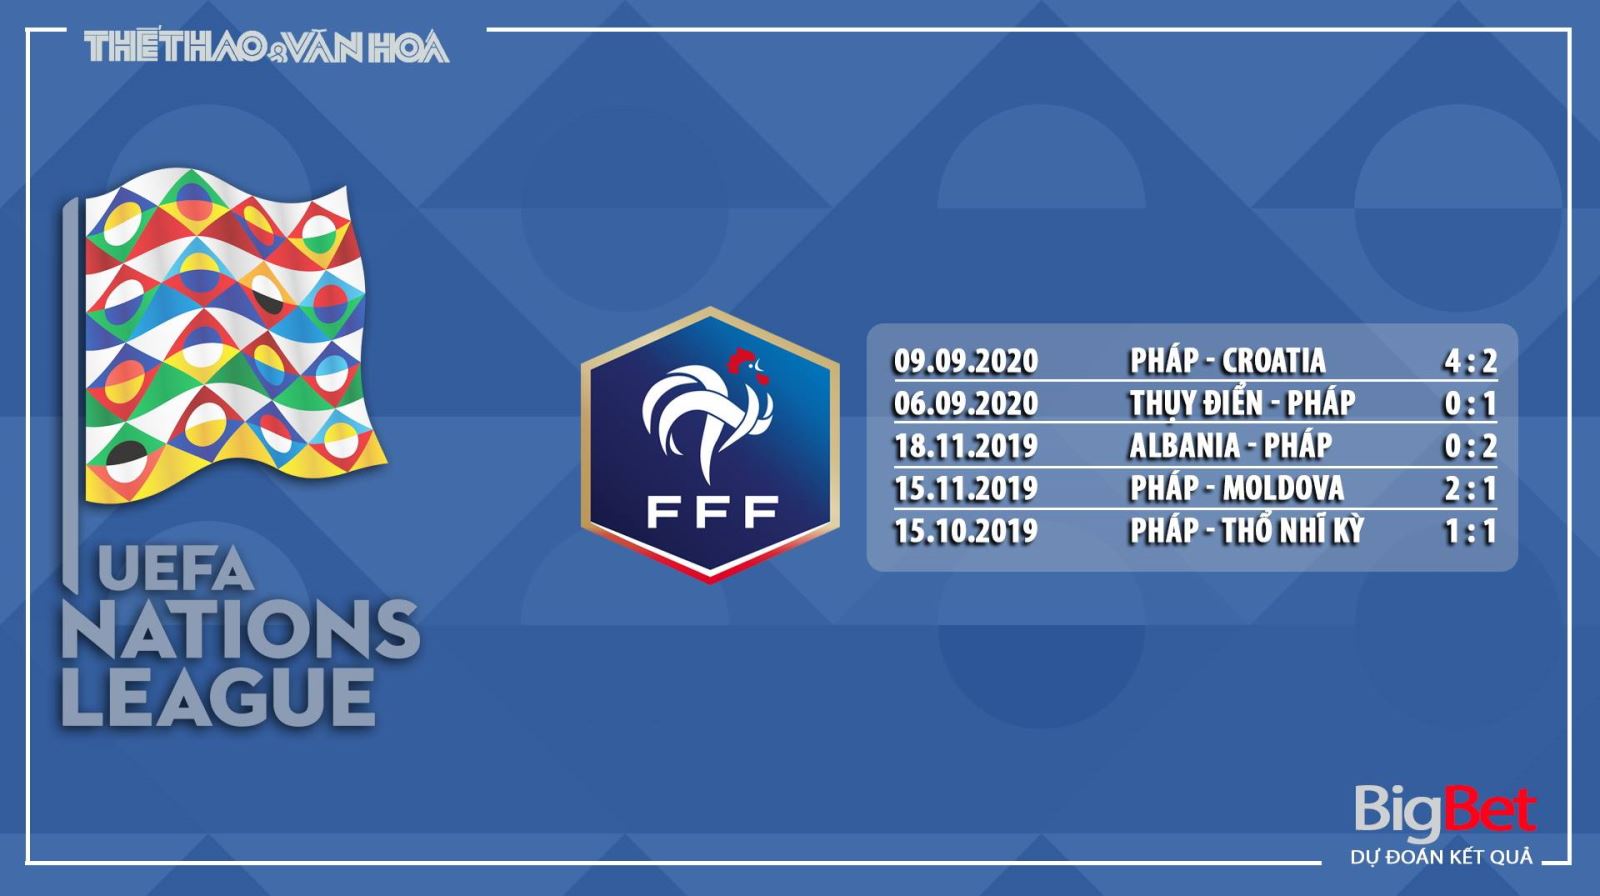 Pháp vs Bồ Đào Nha, Pháp, Bồ Đào Nha, nhận định bóng đá Pháp vs Bồ Đào Nha, dự đoán Pháp vs Bồ Đào Nha, trực tiếp Pháp vs Bồ Đào Nha, kèo bóng đá, nhận định kết quả